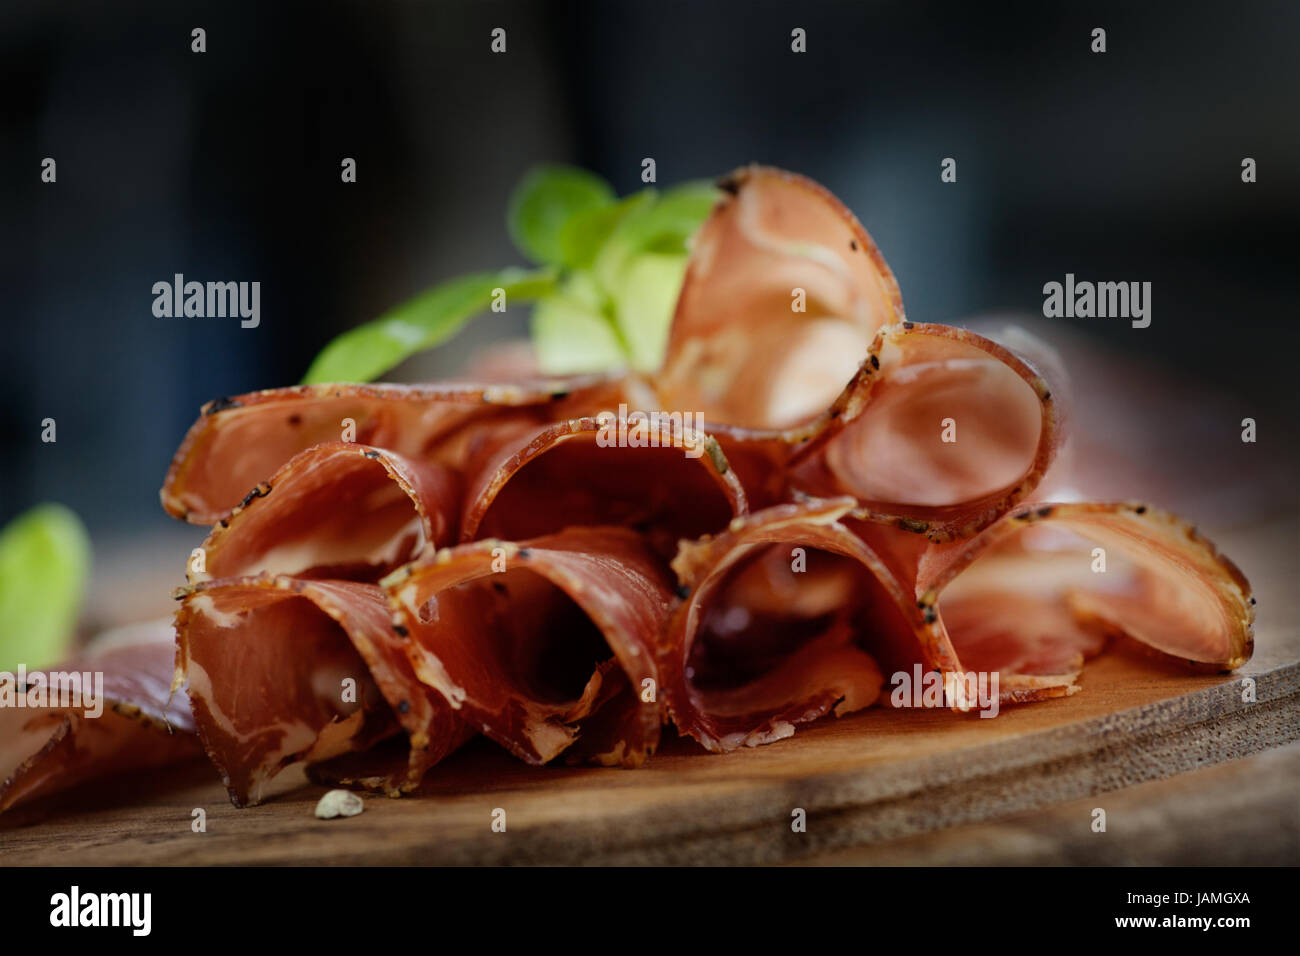 Carne di maiale essiccata collare prosciutto salame con erbe aromatiche Foto Stock